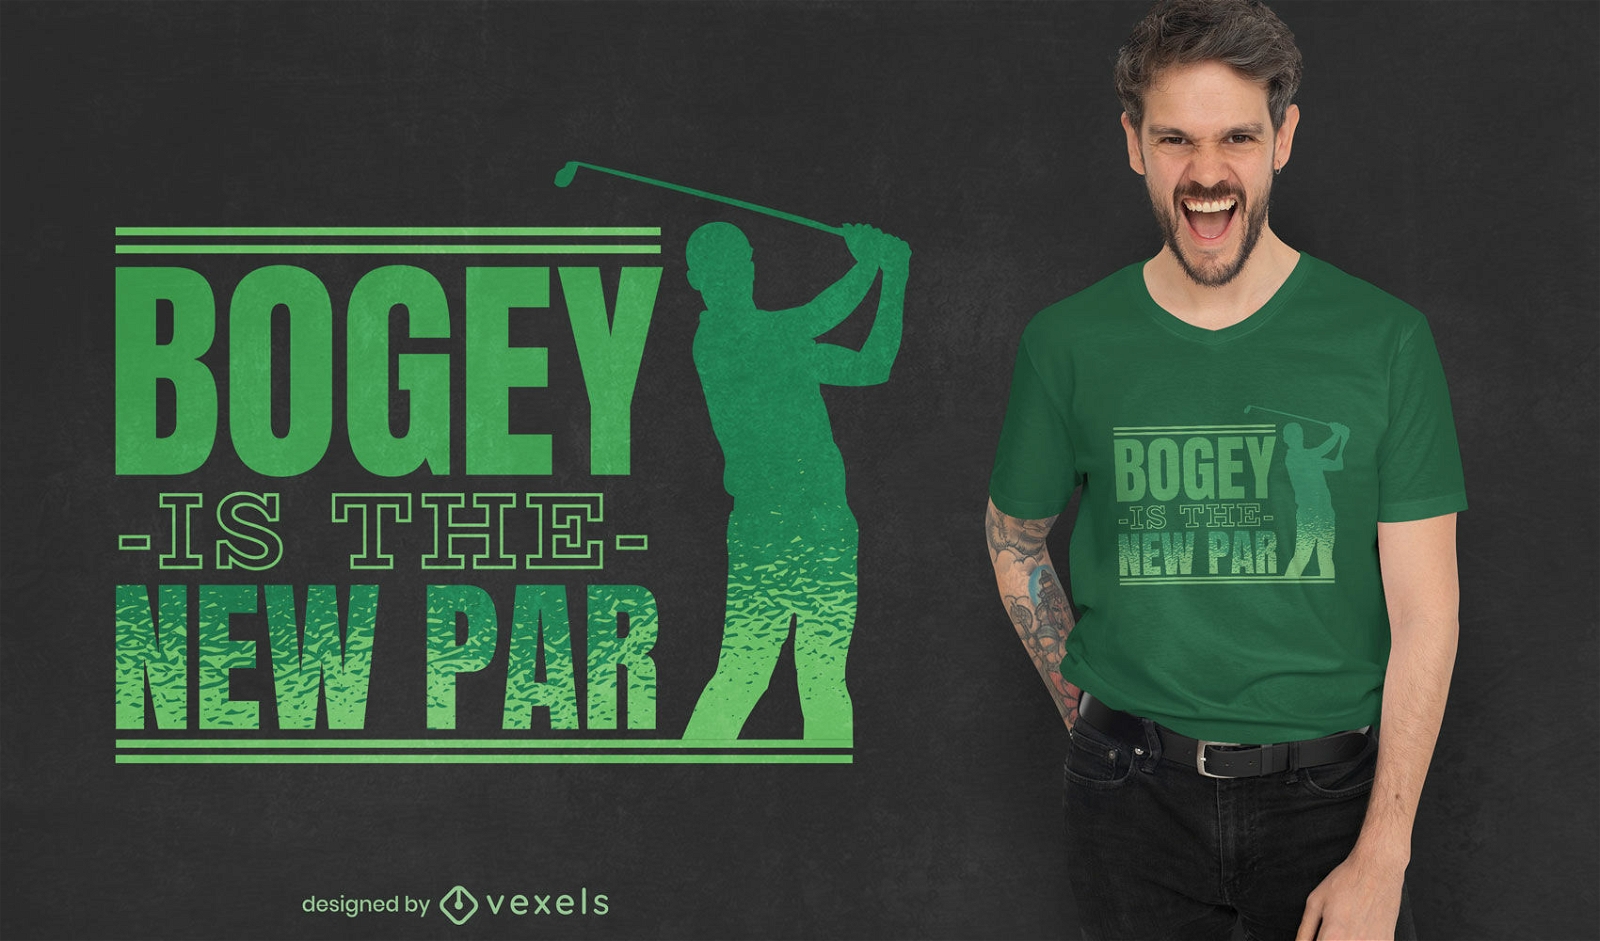 Bogey is the new par golfing t-shirt design